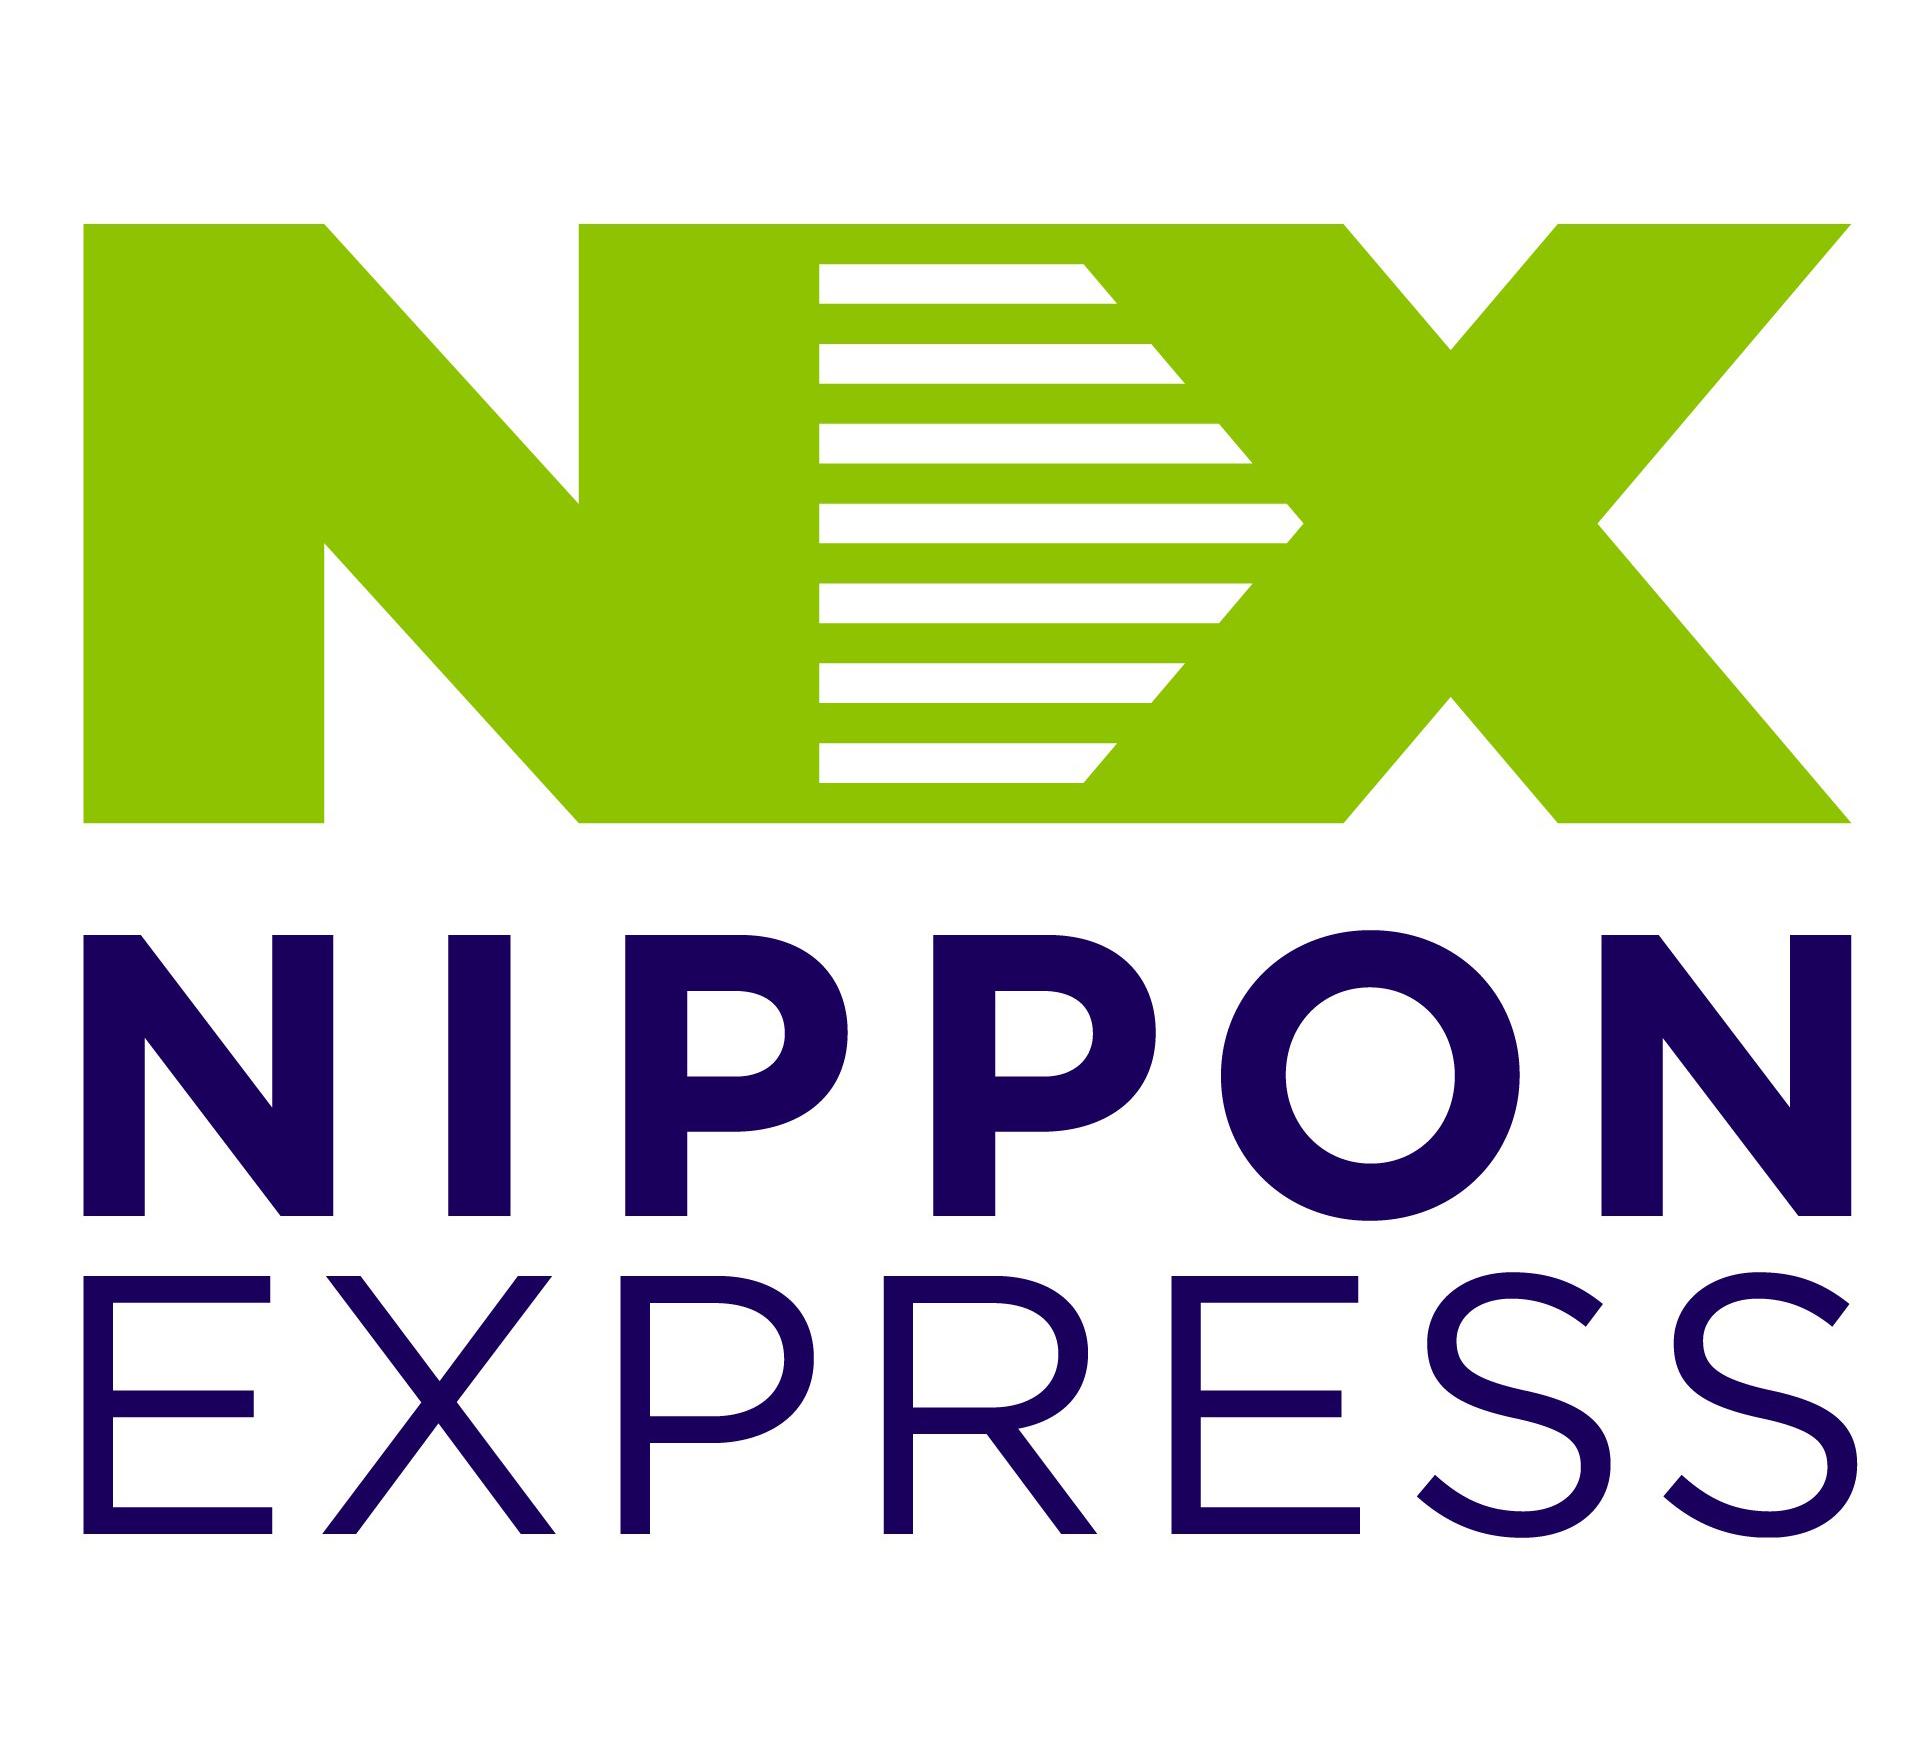 NIPPON EXPRESS (VIETNAM) CO., LTD